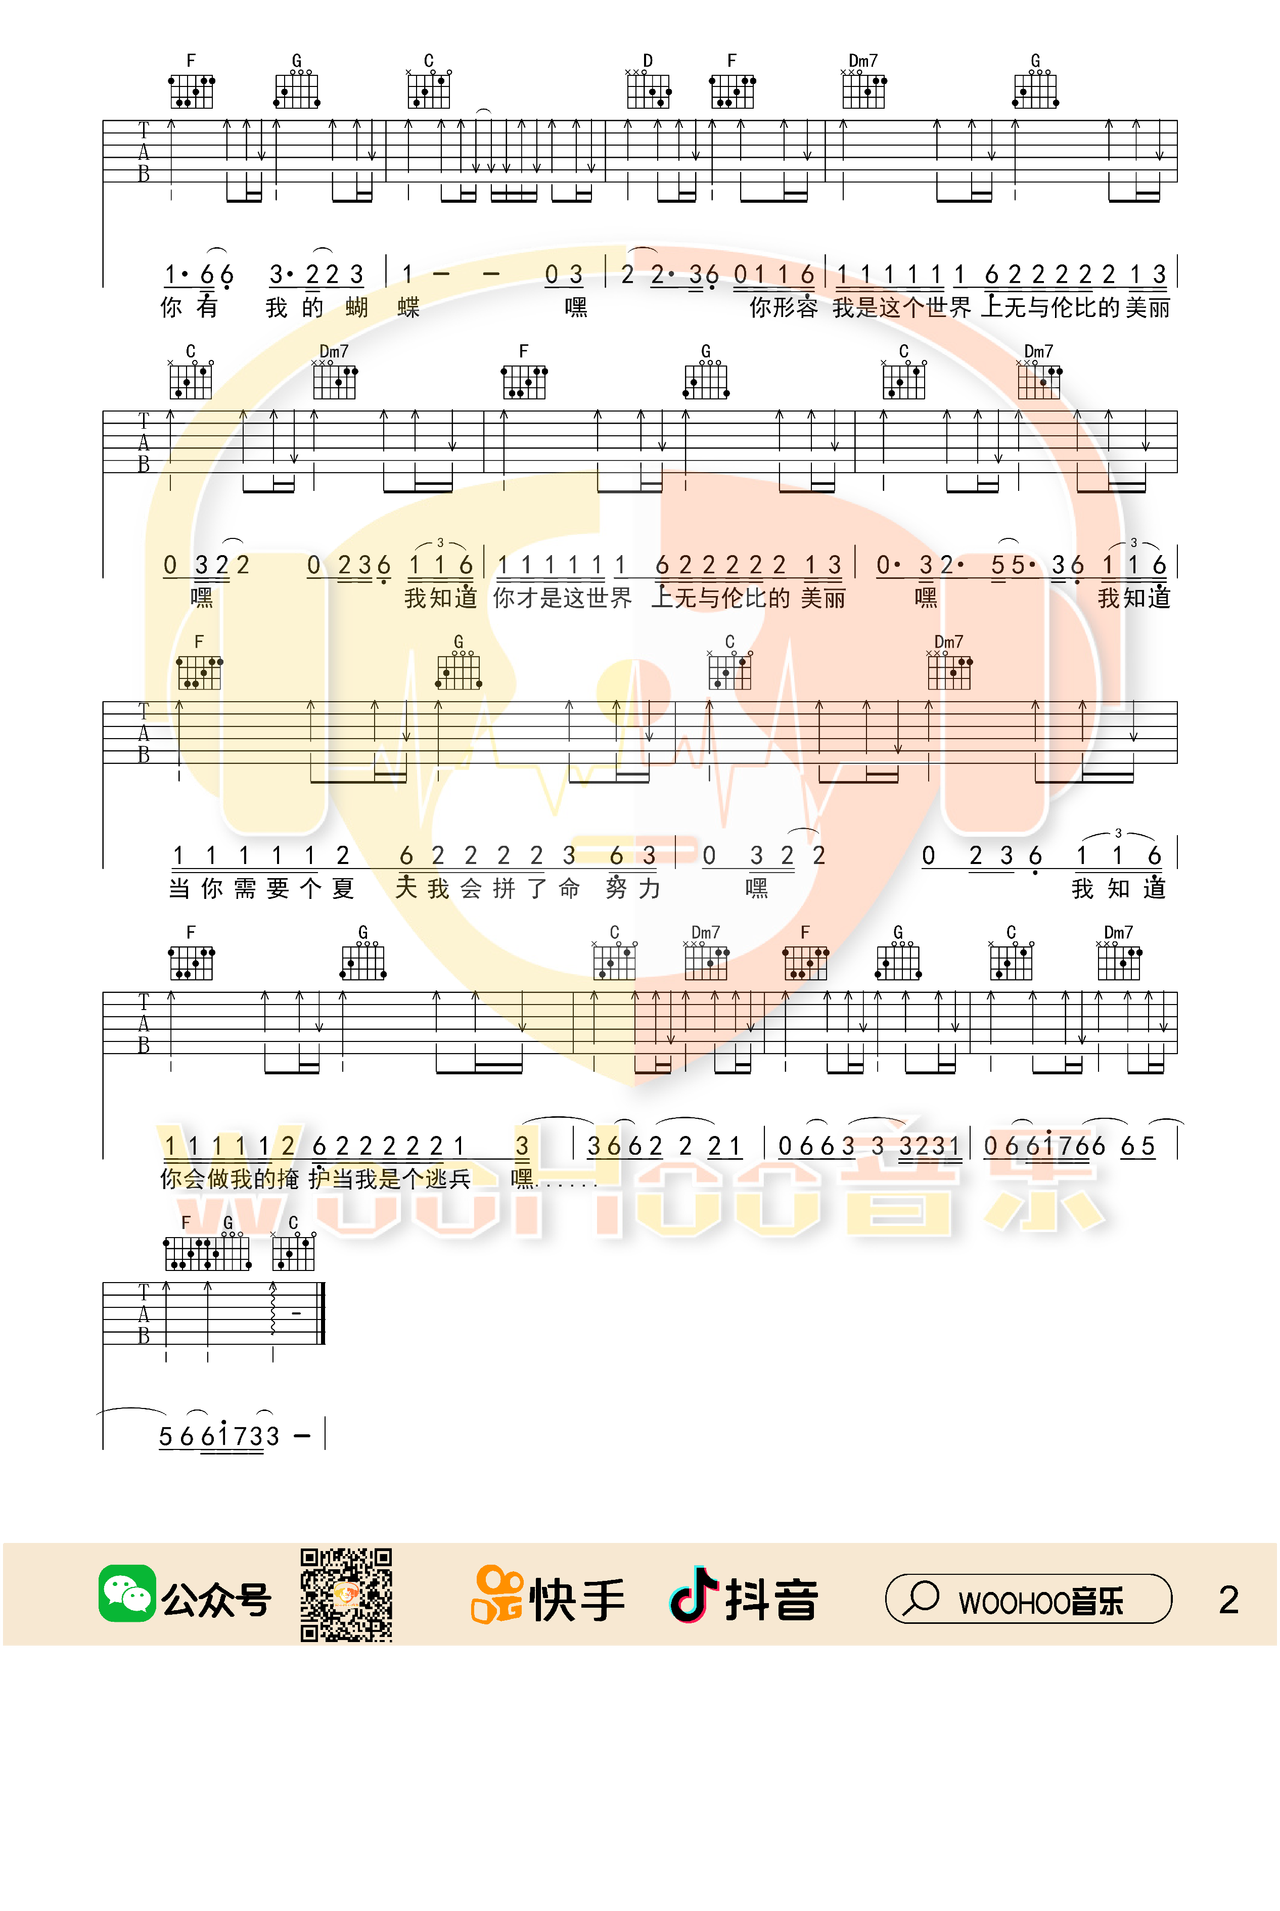 苏打绿【无与伦比的美丽吉他谱】_在线免费打印下载-爱弹琴乐谱网